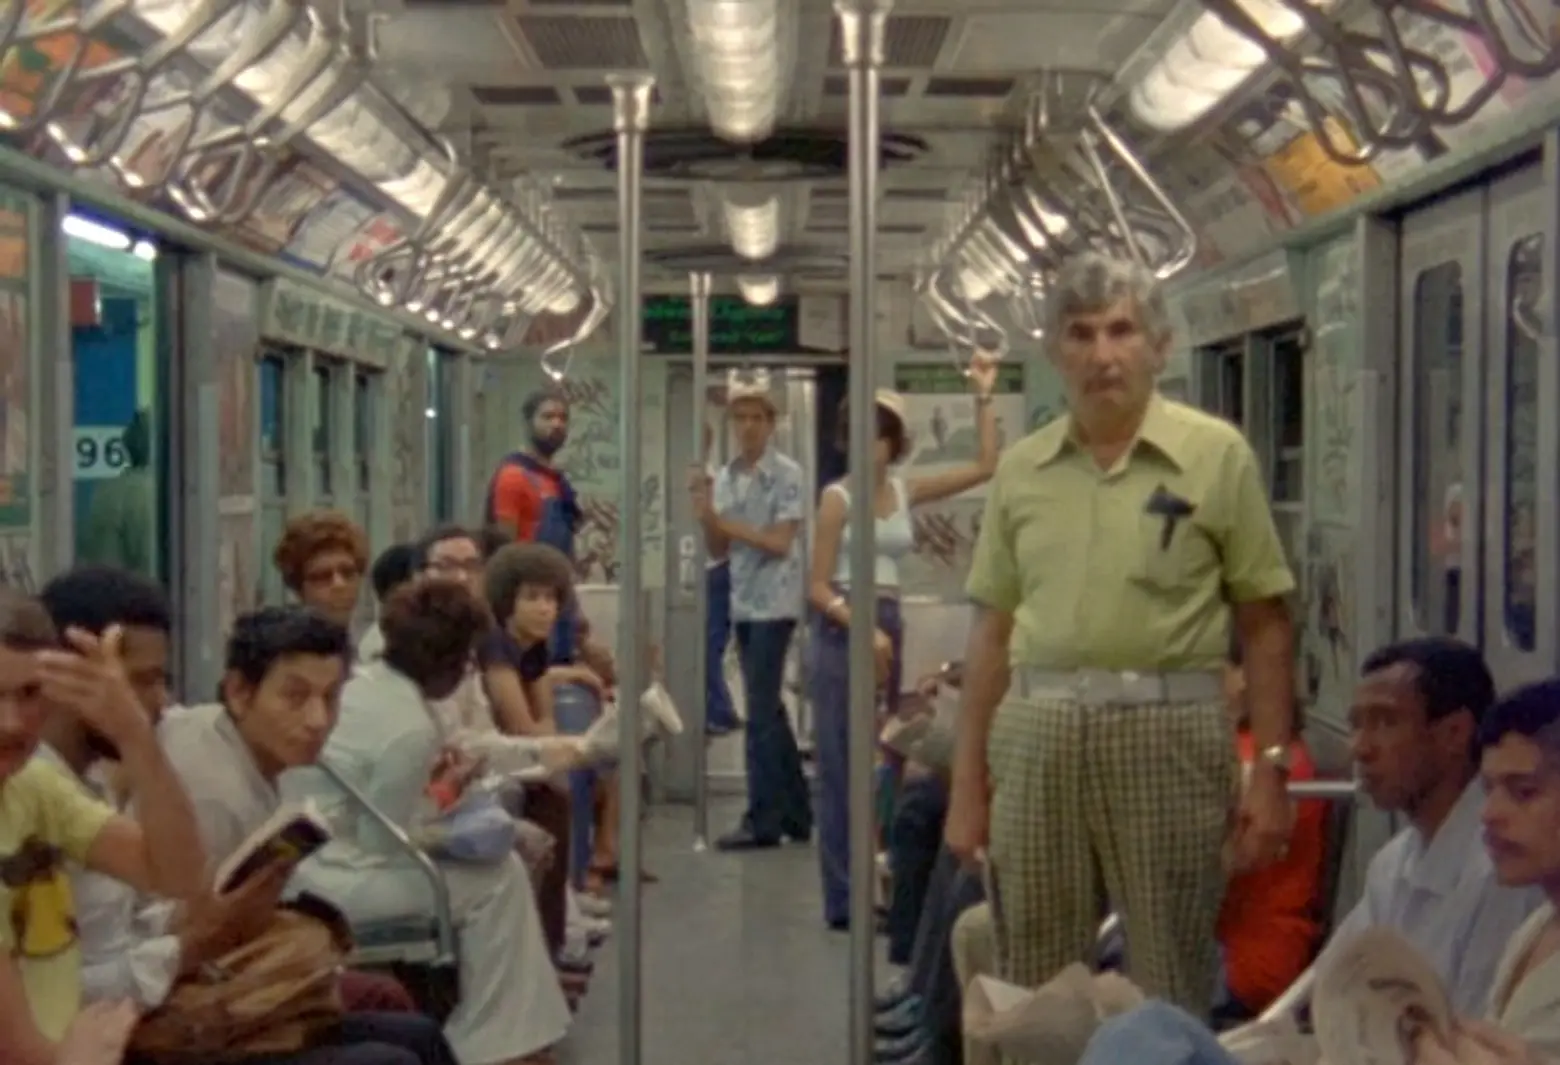 1970s subway, Chantal Akerman, vintage subway cars, New from Home, 